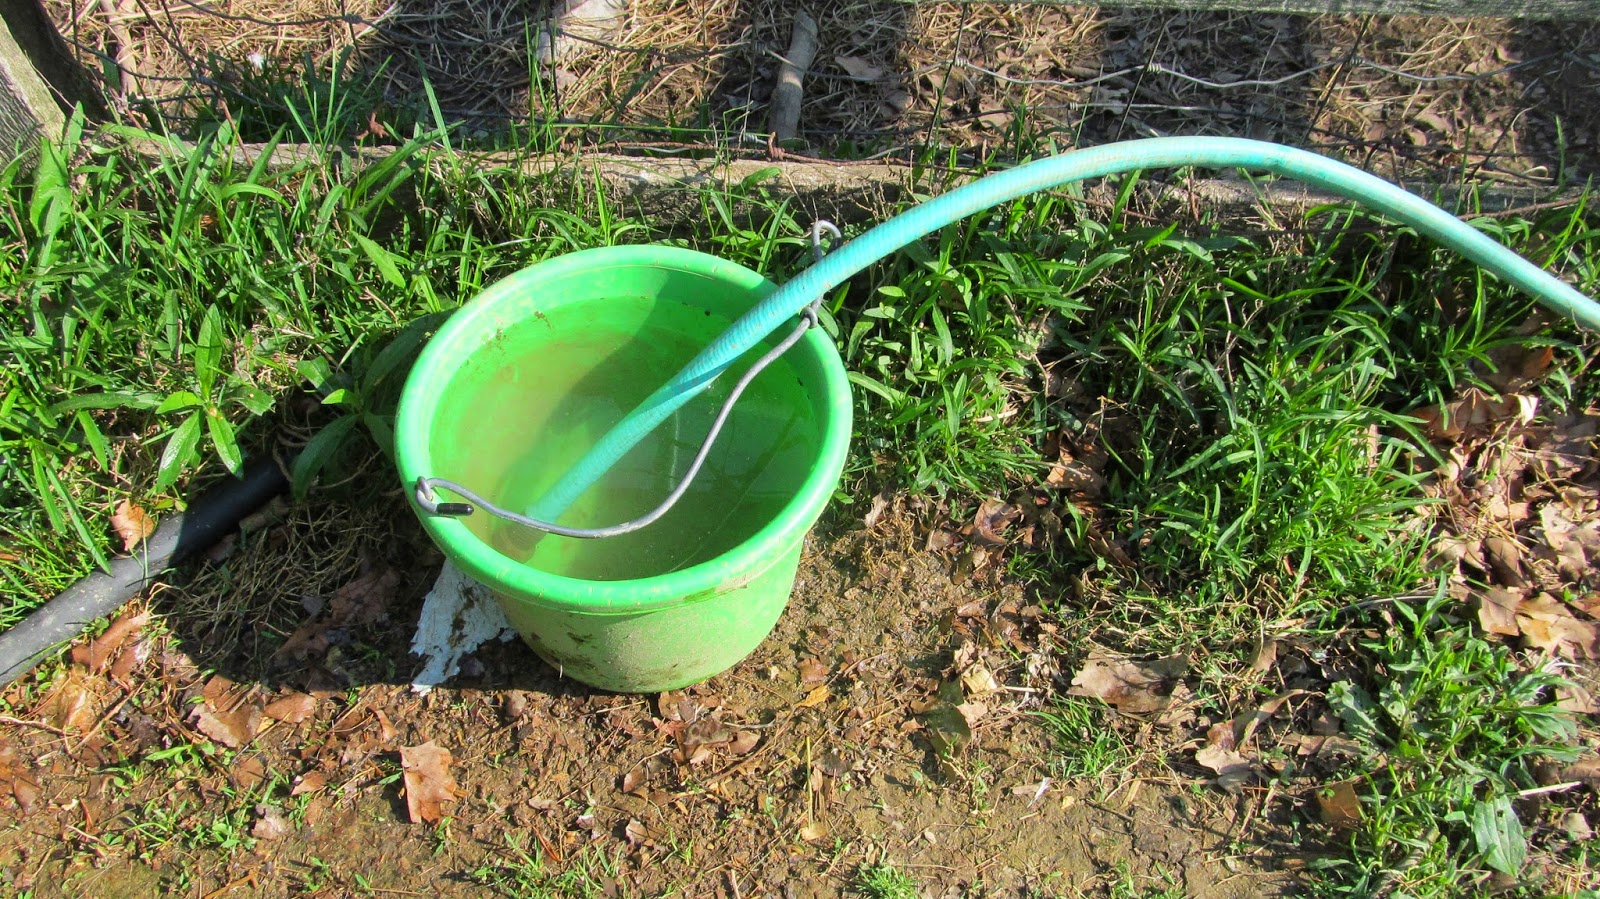 hose in bucket